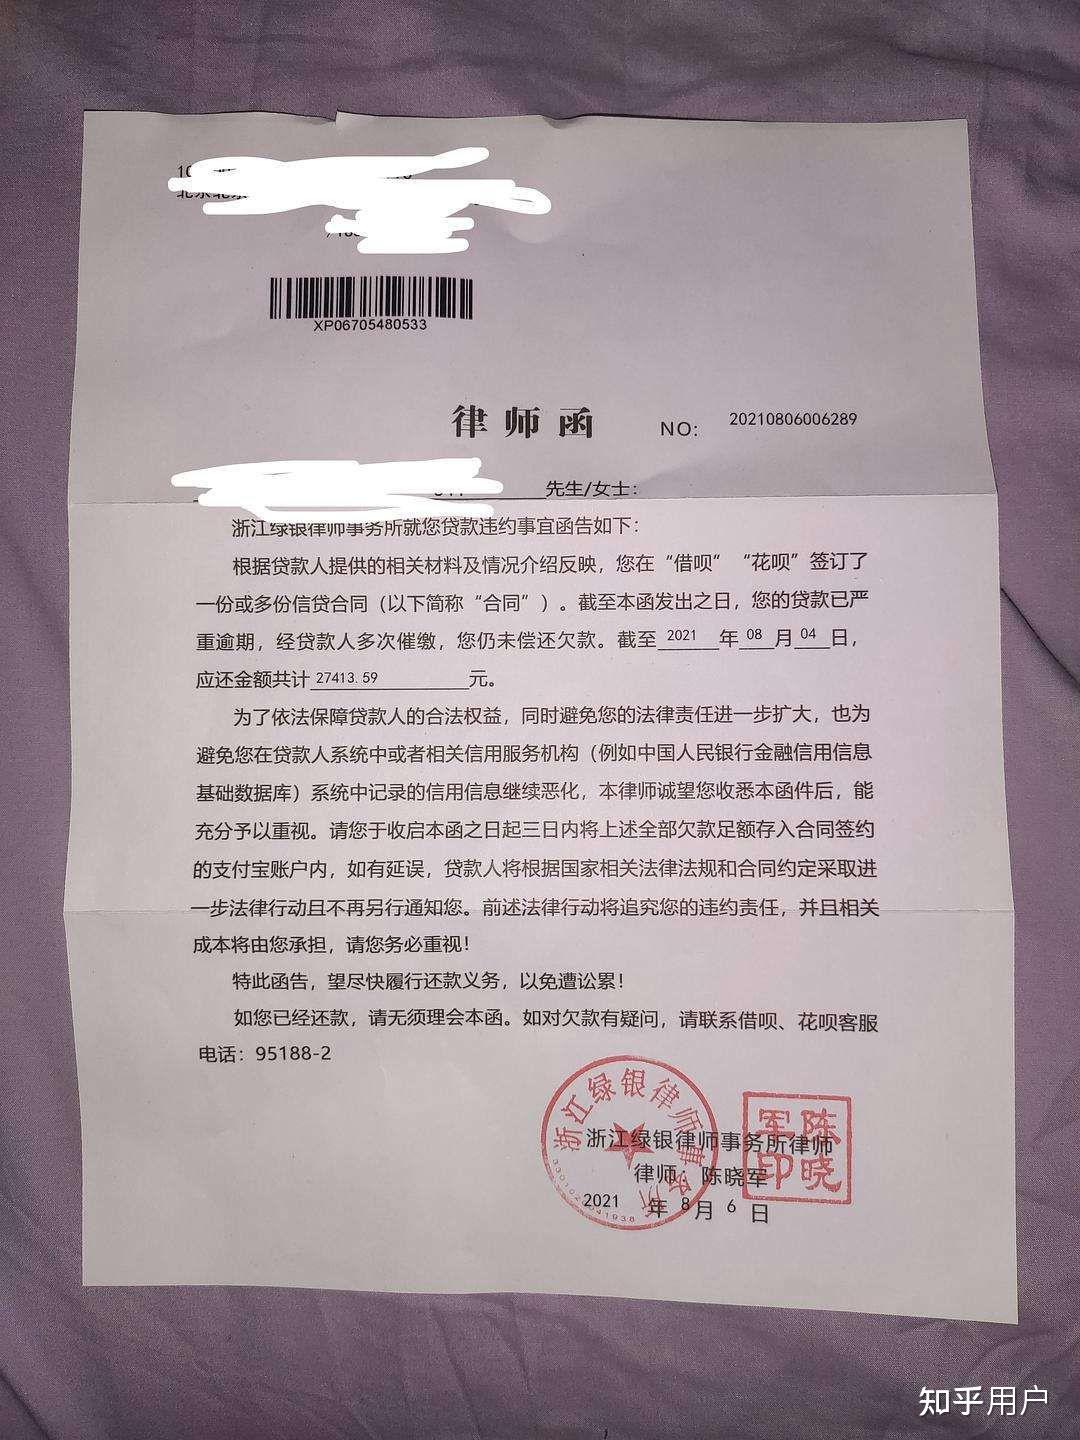 支付宝借呗逾期,收到了北京威律律师事务所的律师函是被起诉了吗?